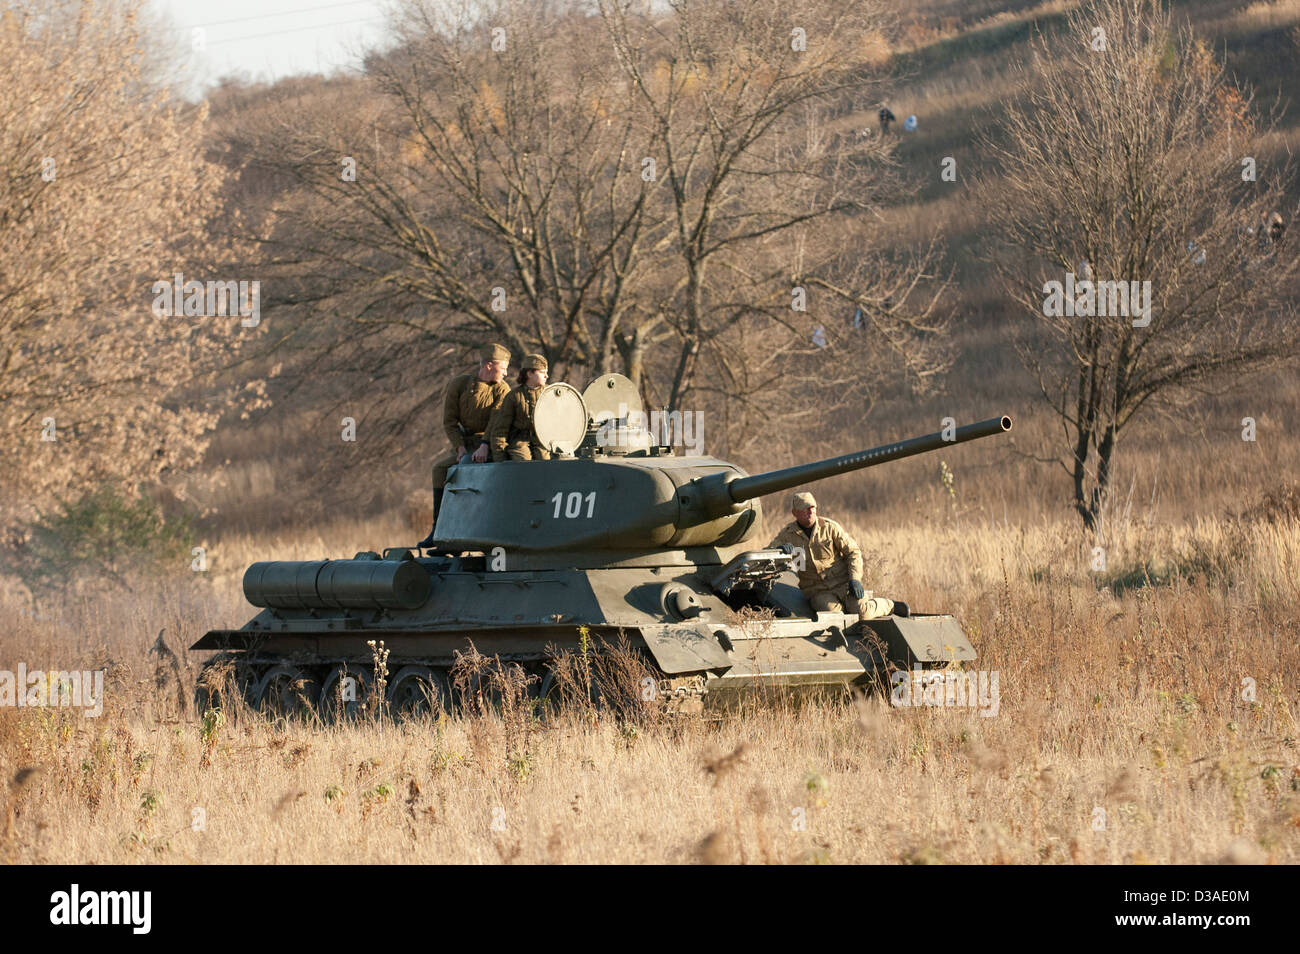 Soviet T-34 tank in a field. Stock Photo